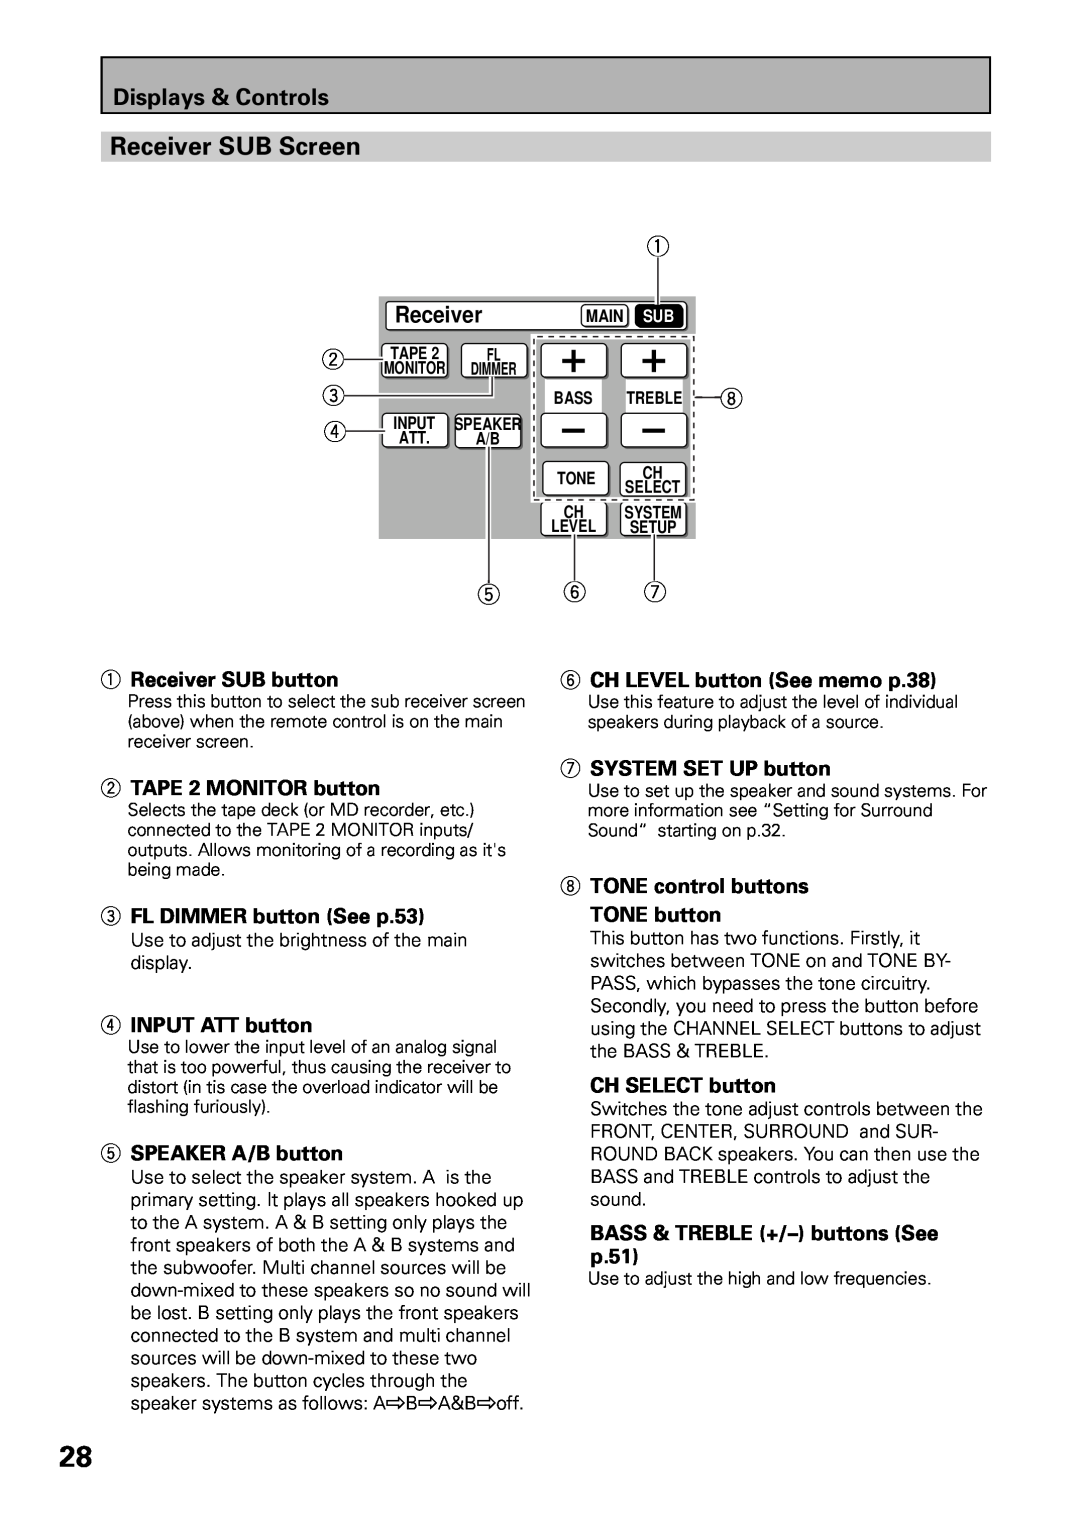 Pioneer VSX-39TX manual Receiver SUB Screen, Displays & Controls 